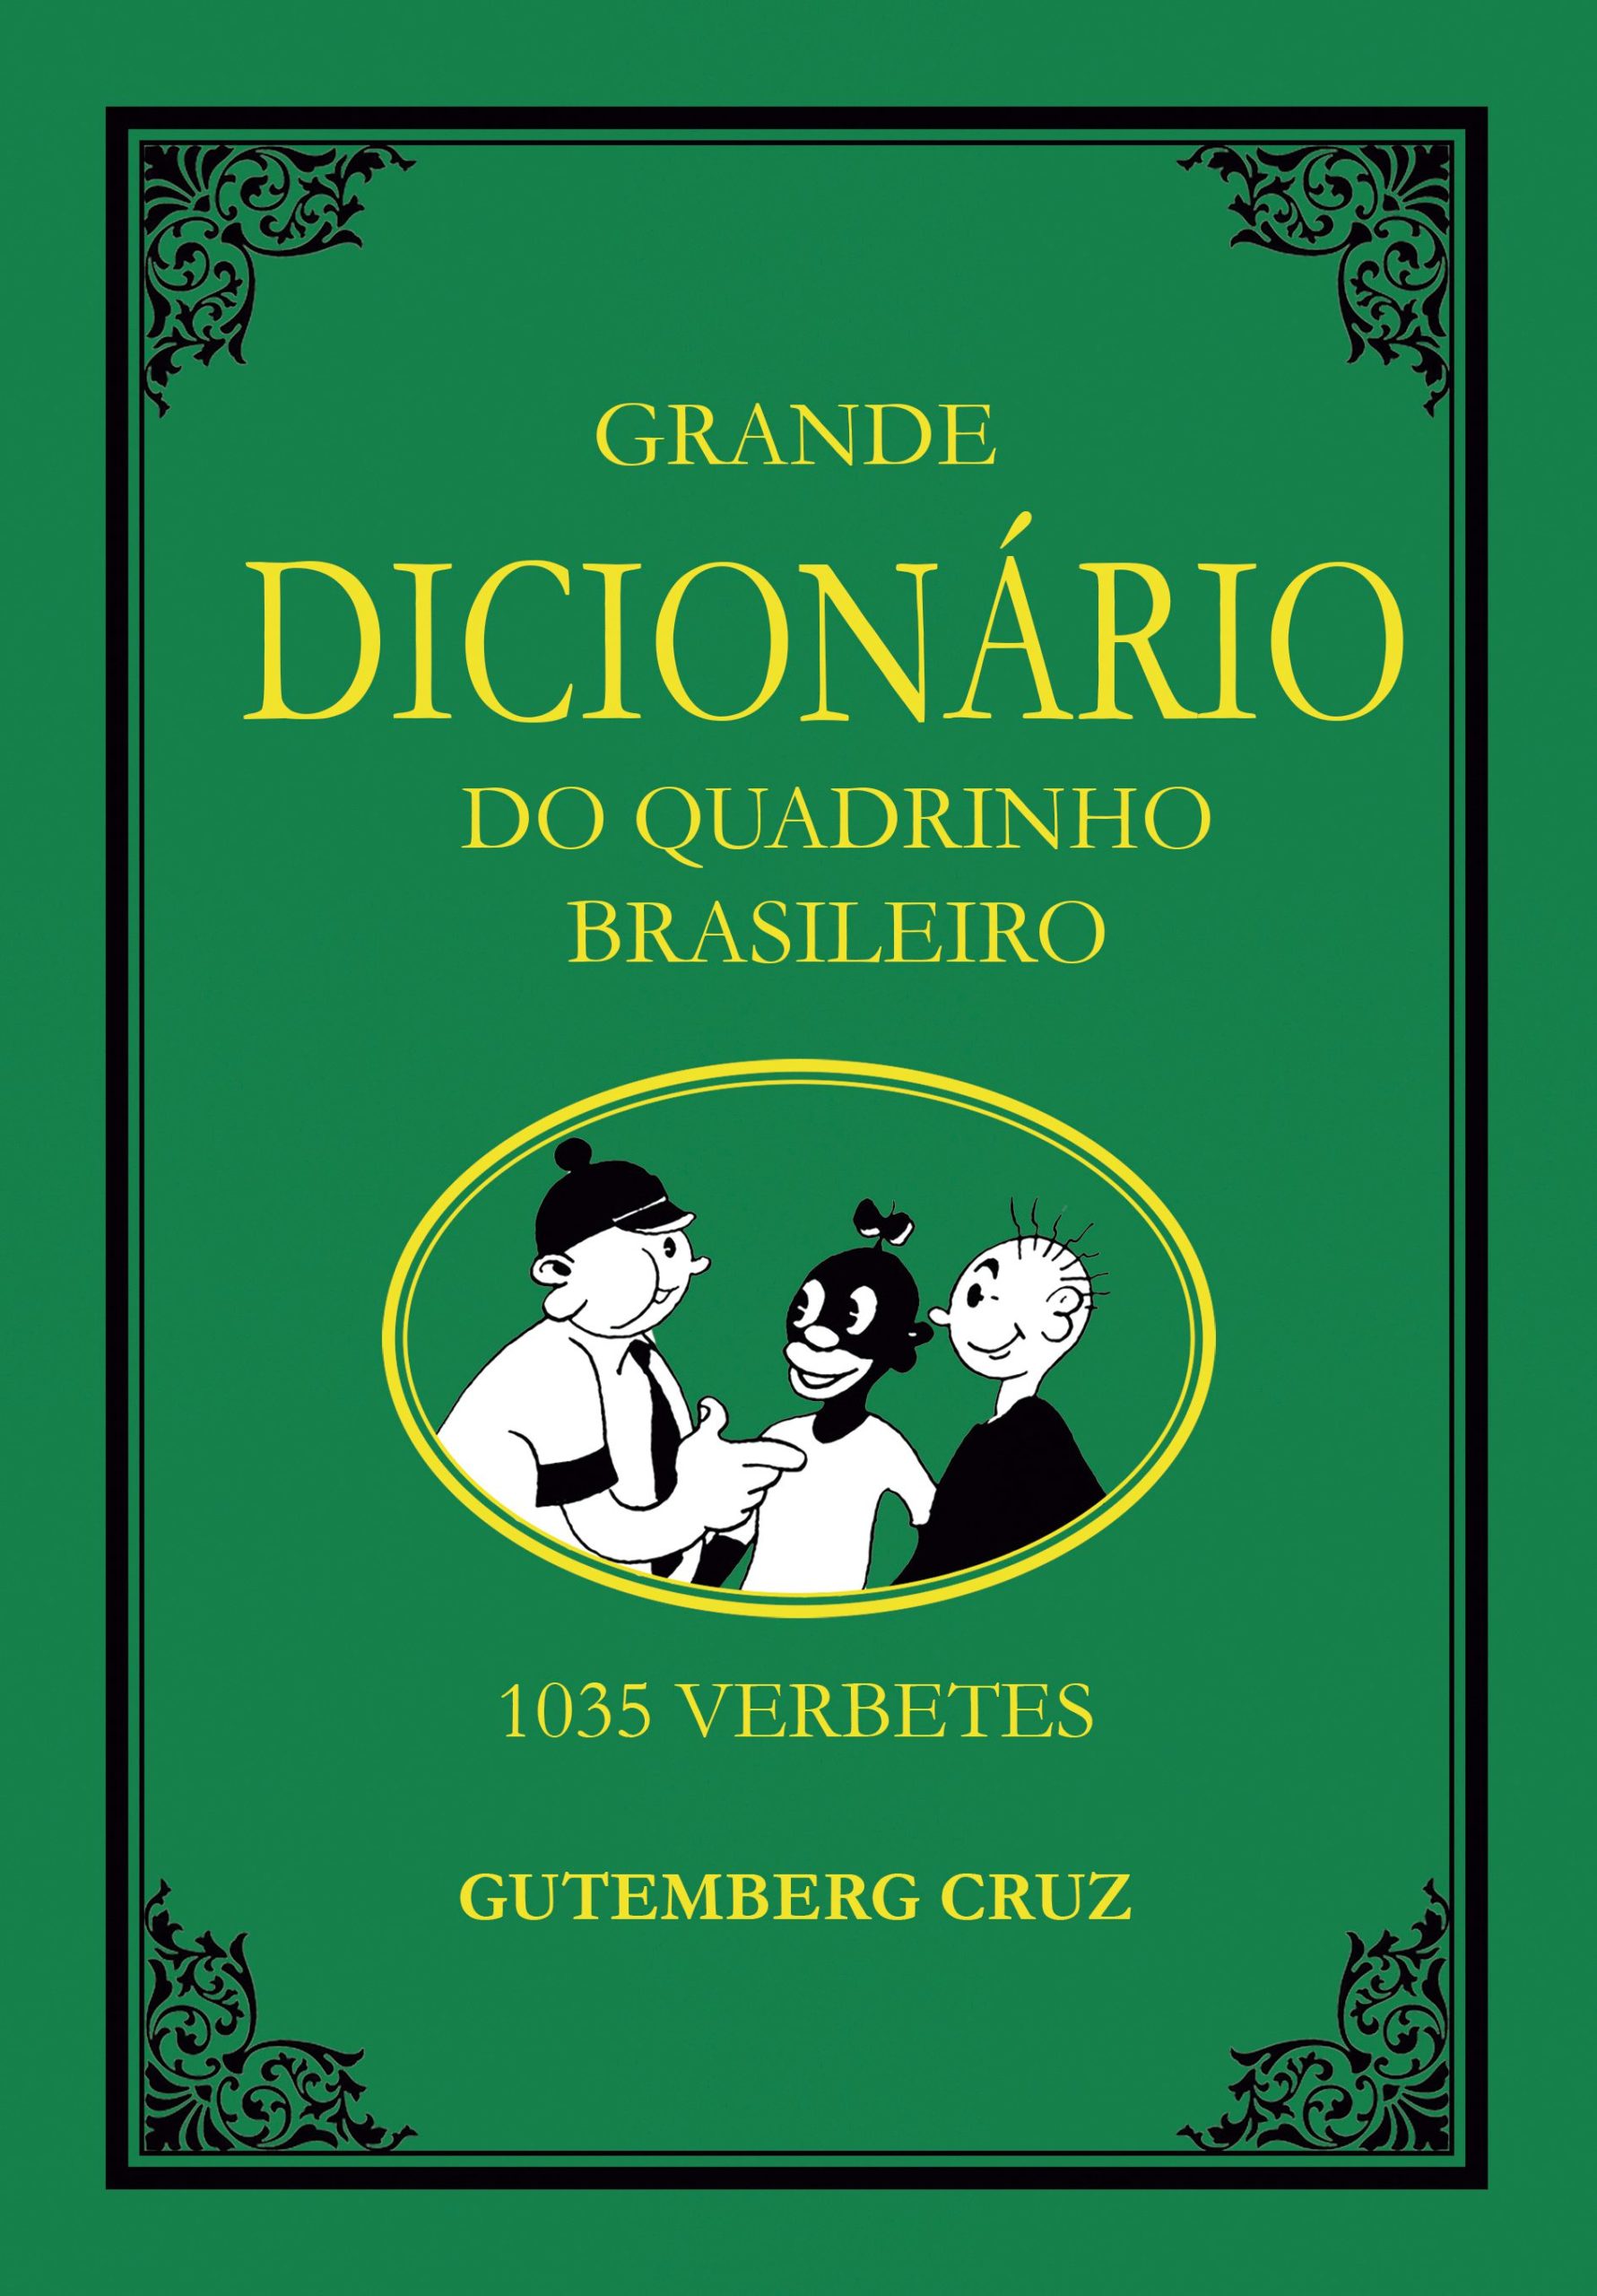 Diário da Cidade: Editora Noir lança dicionário com 1035 verbetes brasileiros de quadrinhos